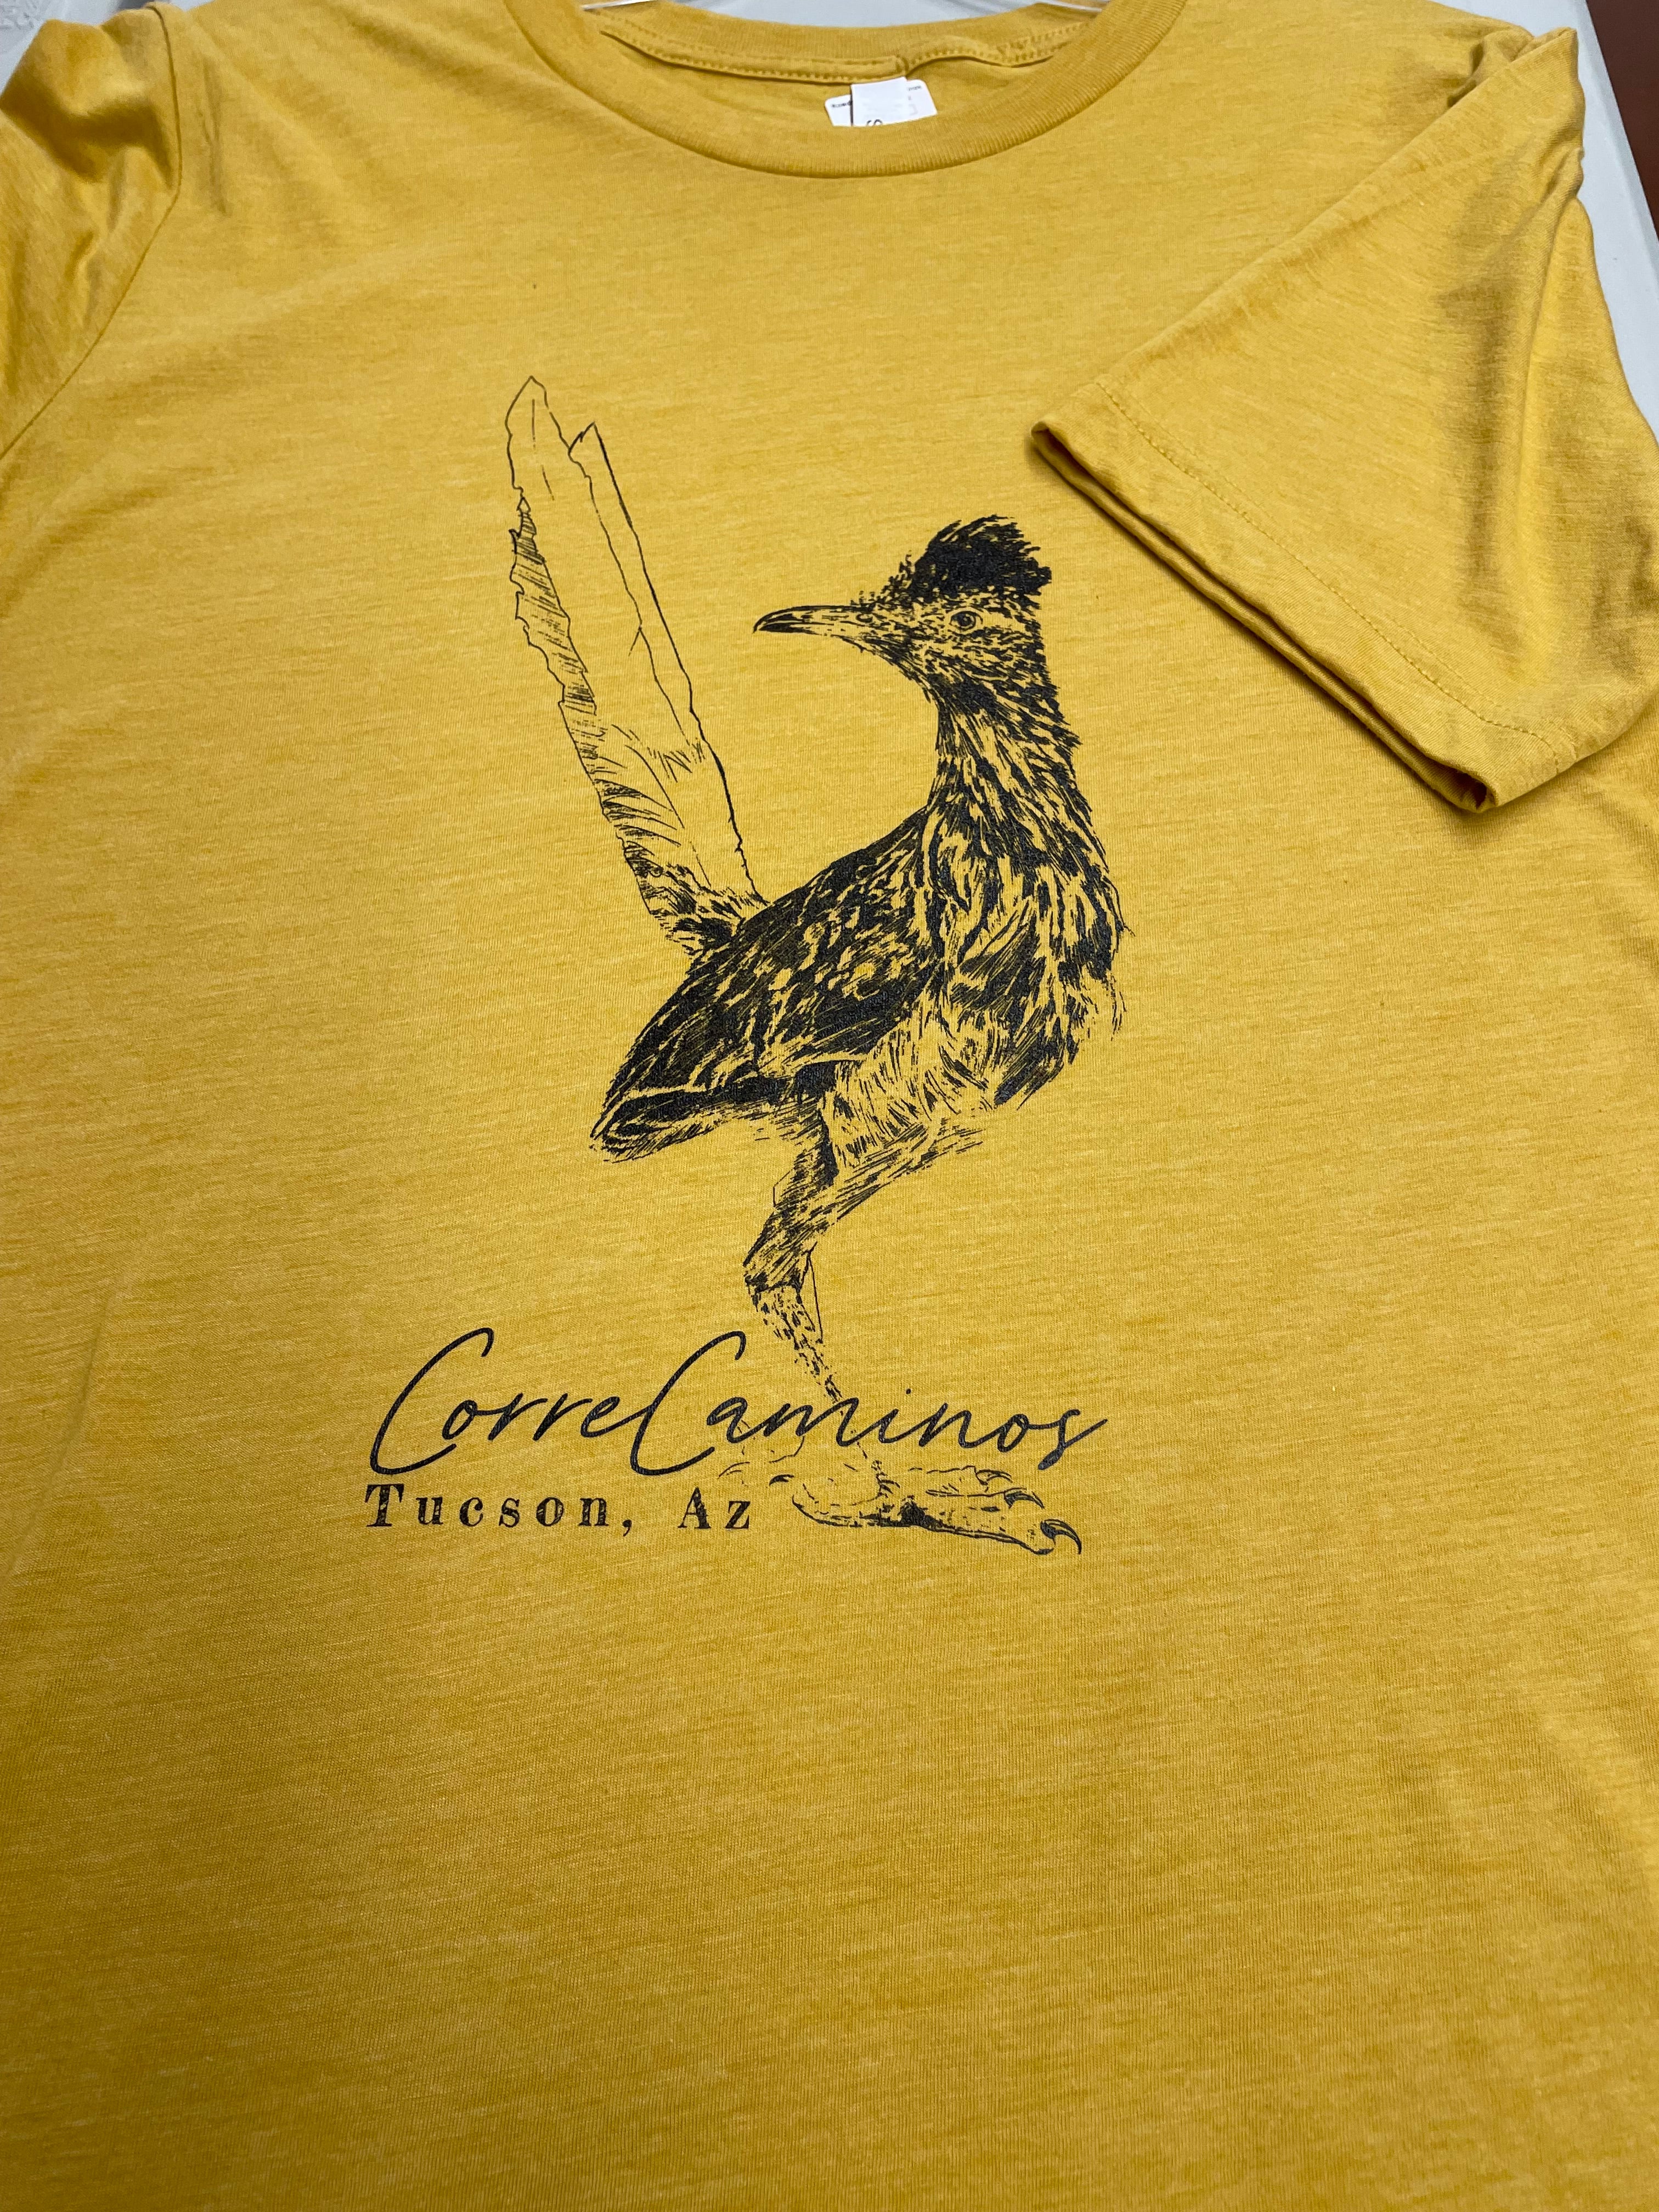 Corre Caminos (Roadrunner) T-shirt